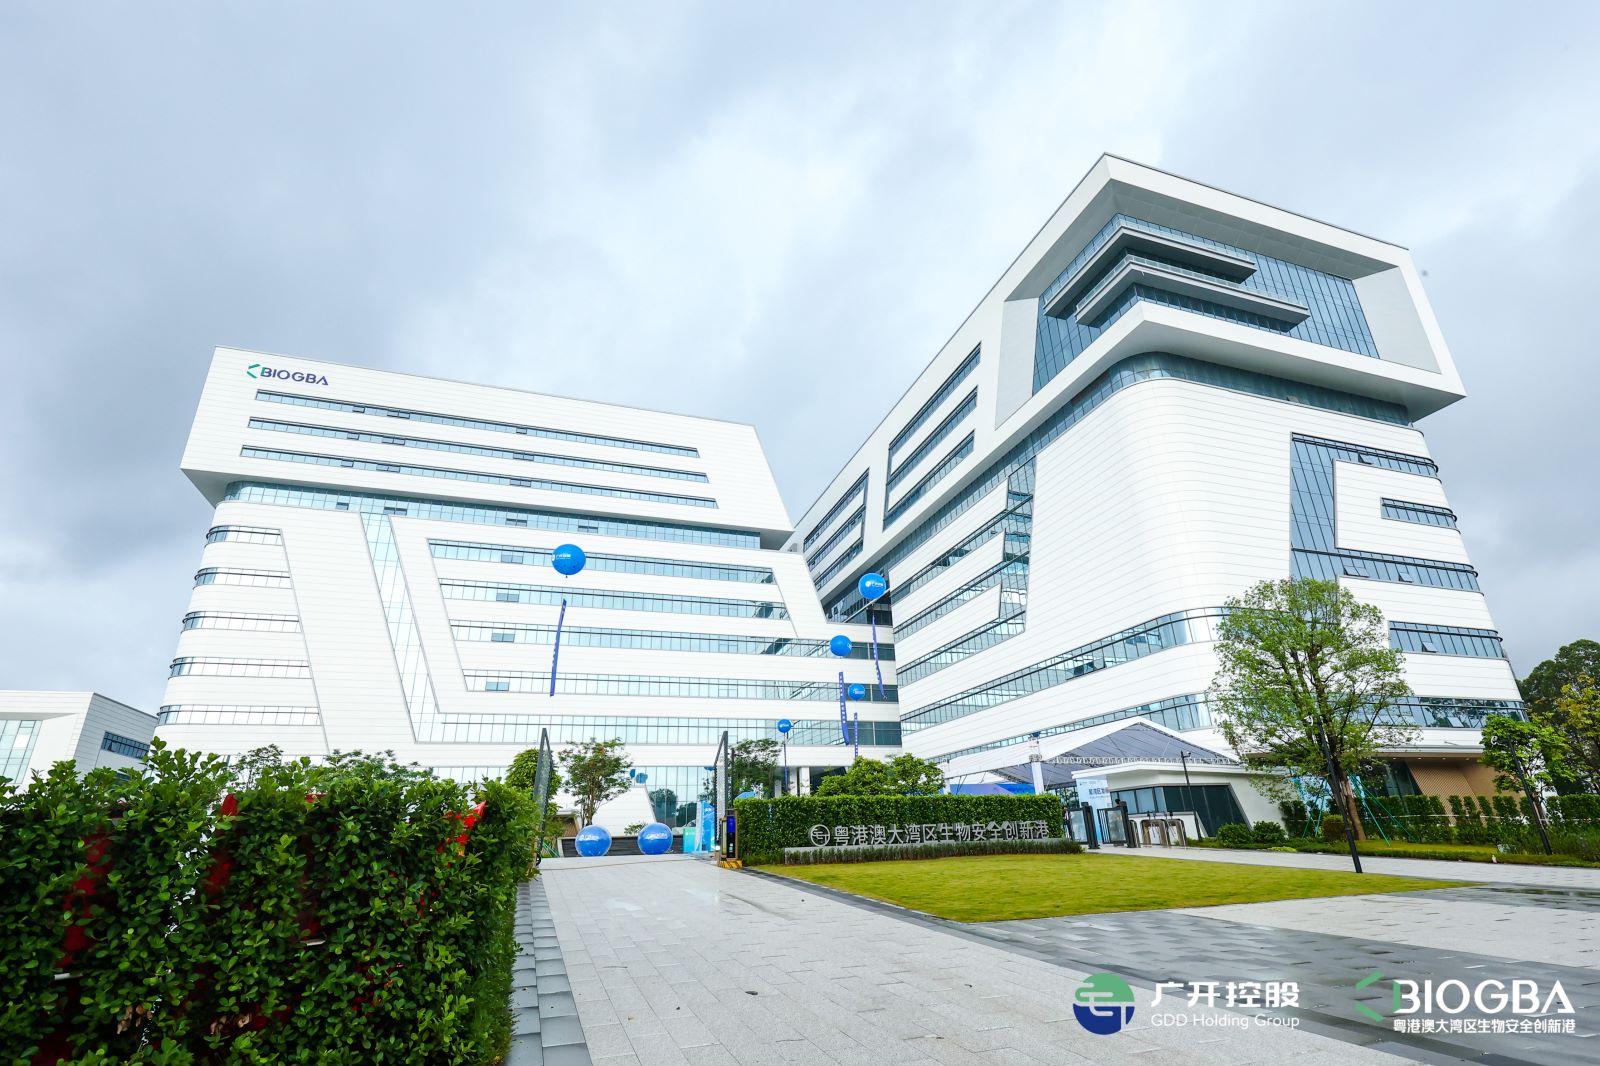 聚焦中试研发阶段的专业化载体，BioGBA推动广州黄埔区生物医药产业升级